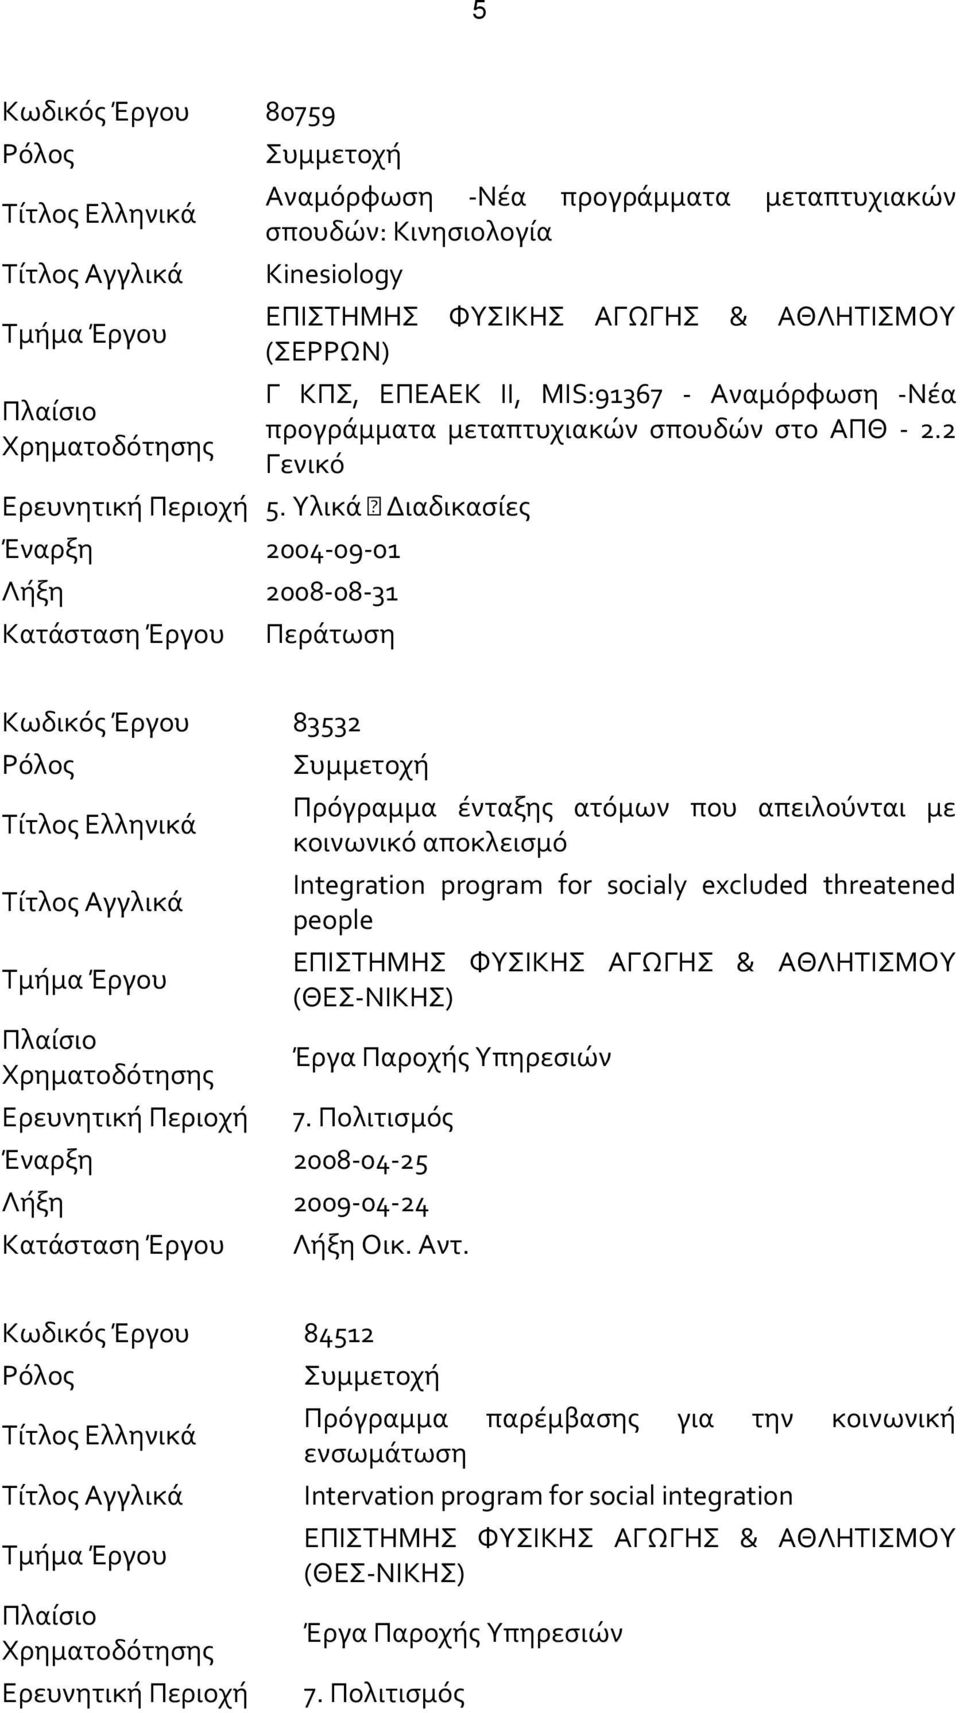 Υλικά Διαδικασίες Έναρξη 2004-09-01 Λήξη 2008-08-31 Κατάσταση Έργου Περάτωση Κωδικός Έργου 83532 Ρόλος Τίτλος Ελληνικά Τίτλος Αγγλικά Τμήμα Έργου Πλαίσιο Χρηματοδότησης Ερευνητική Περιοχή Συμμετοχή